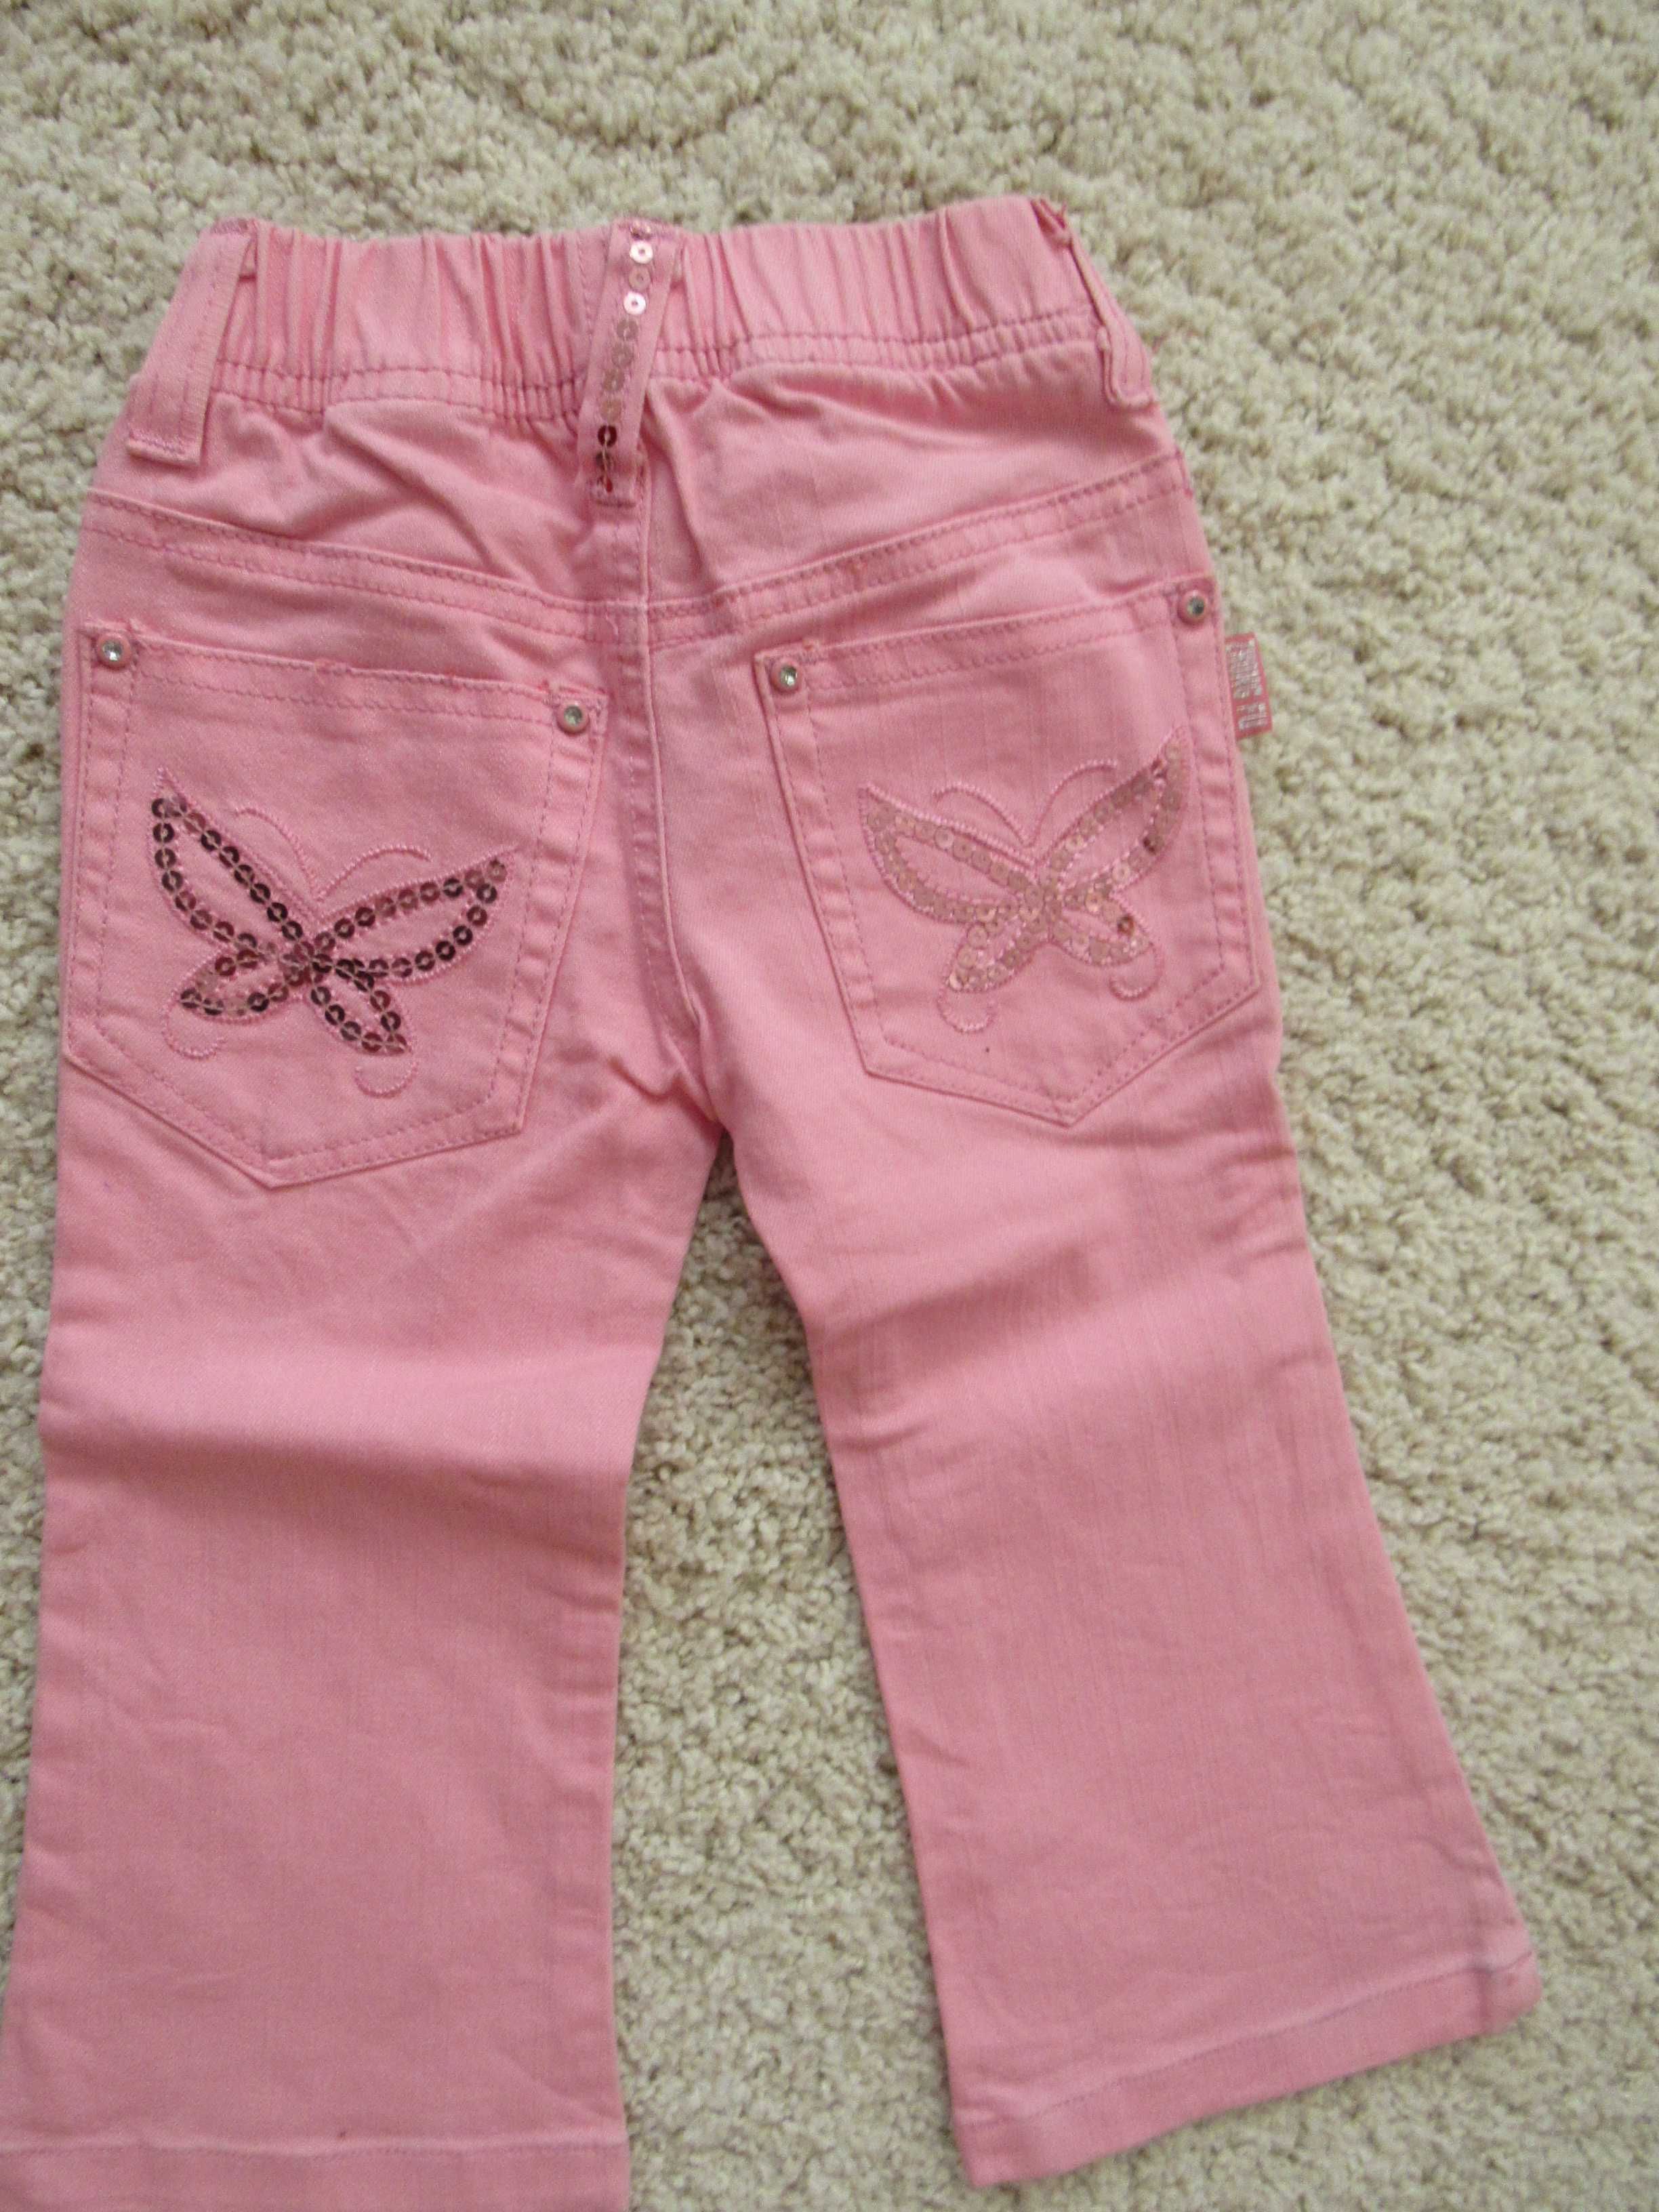 Розови дънки за момиченце, размер 1, нови